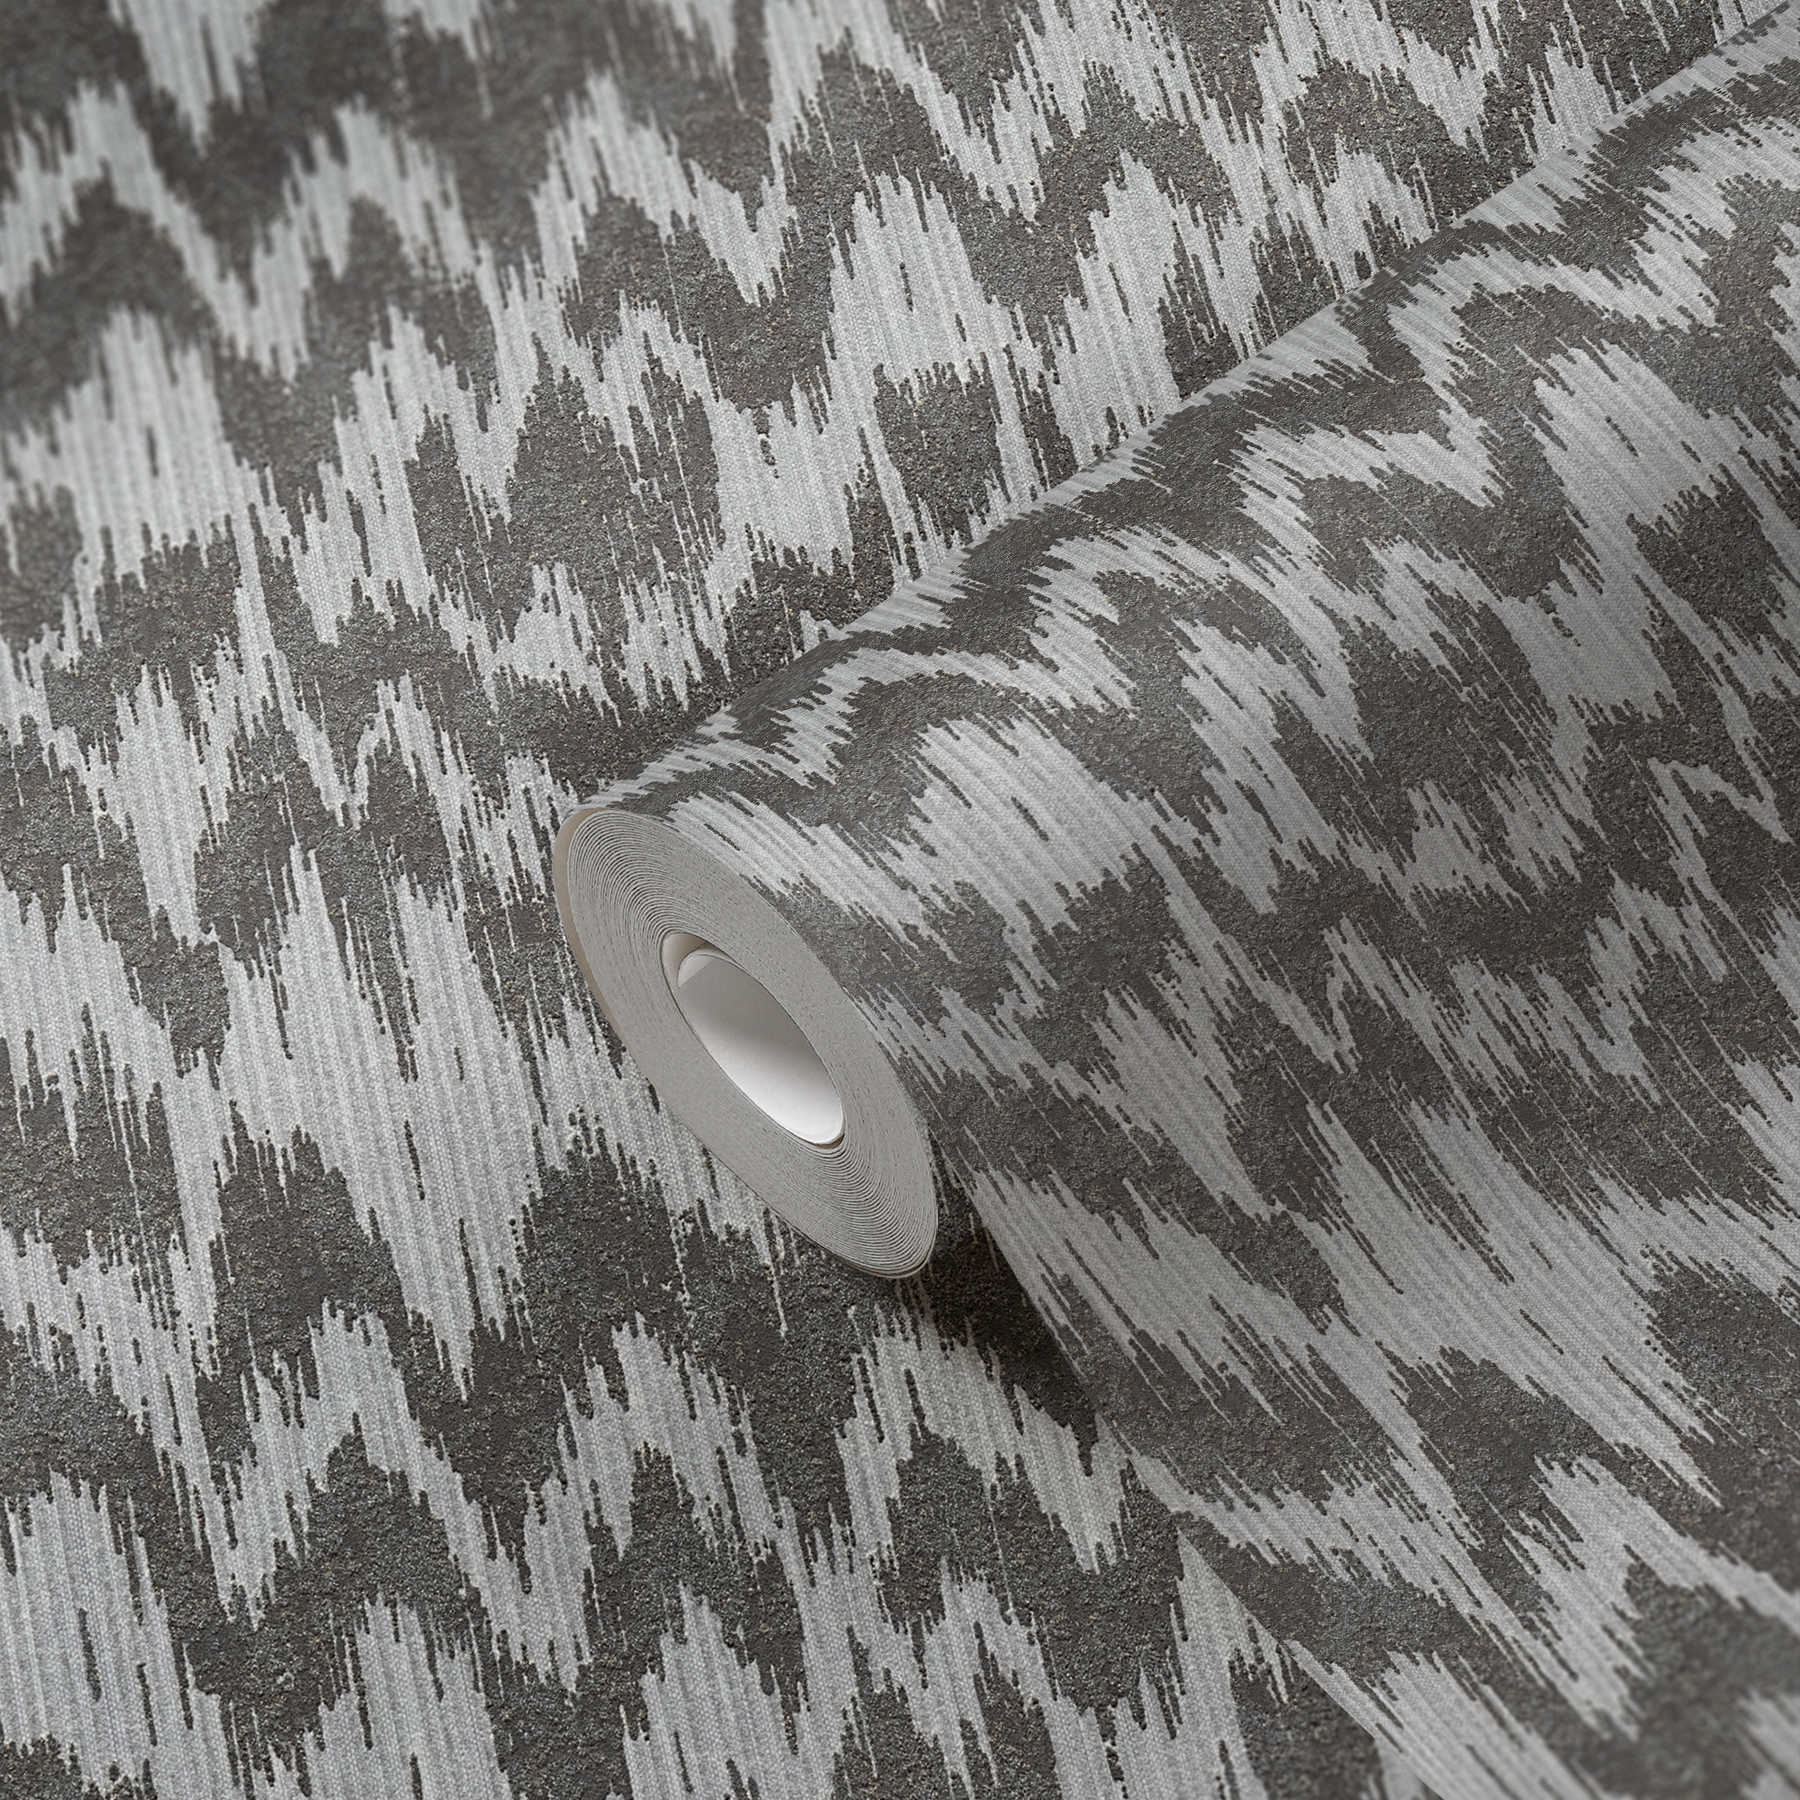             Non-woven wallpaper ethnic style with metallic textile design - grey, metallic
        